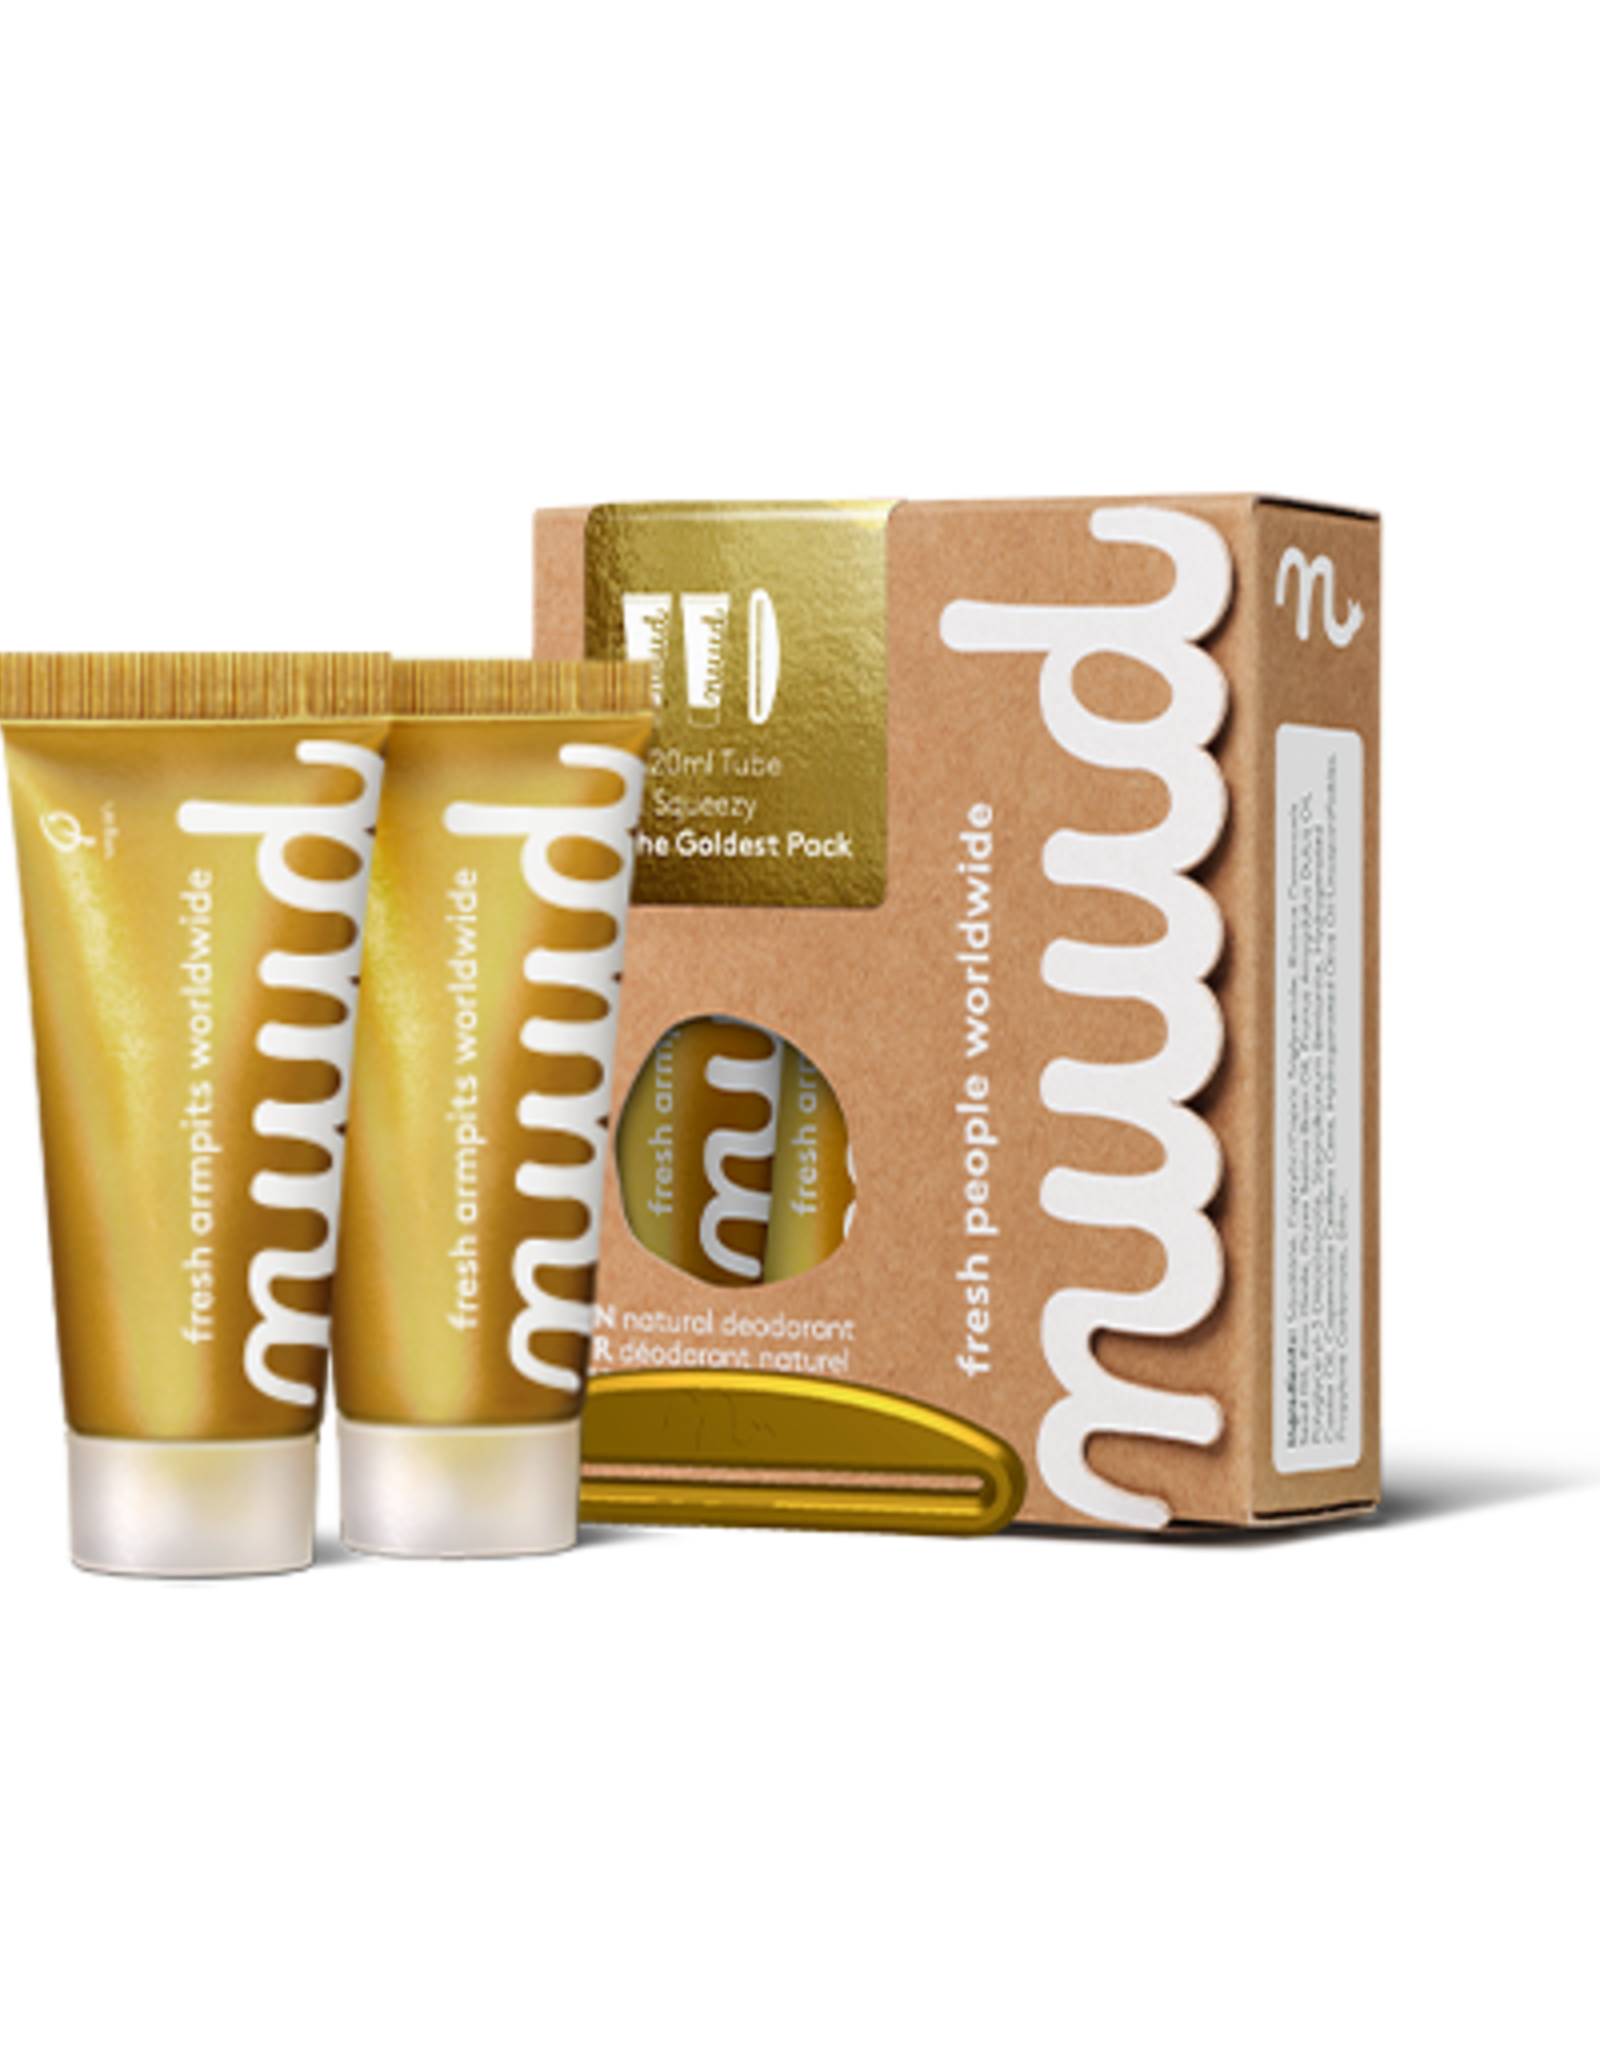 Nuud Veganistische deodorant - het goudste pakket (nieuwe formule) - 2x20ml + 1 Squeezy